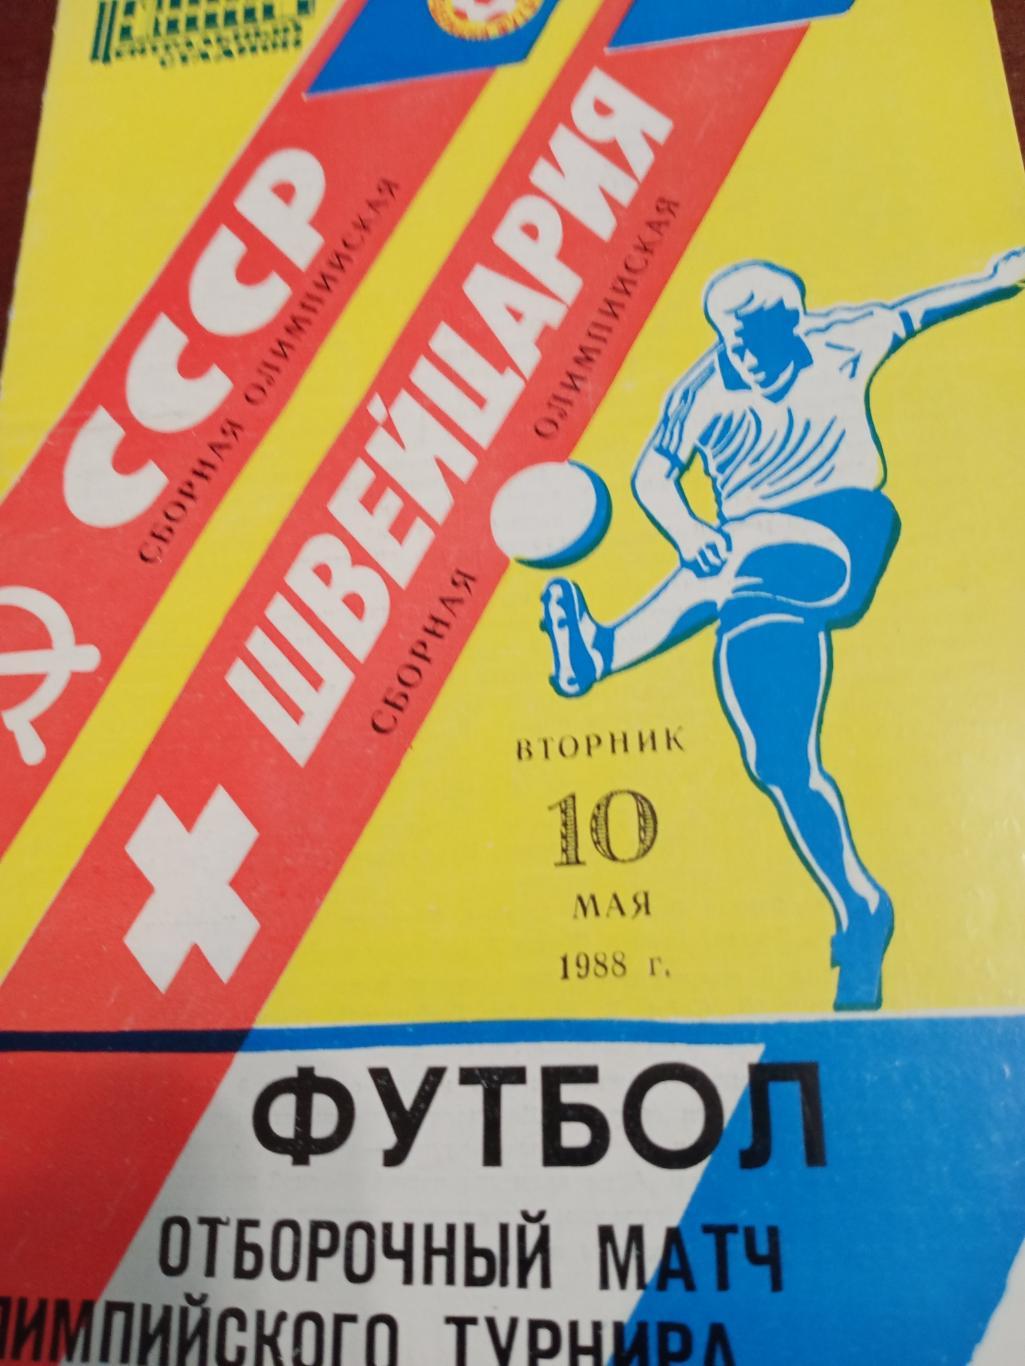 Отборочный матч олимпийского турнира. СССР - Швейцария.10 мая 1988 г